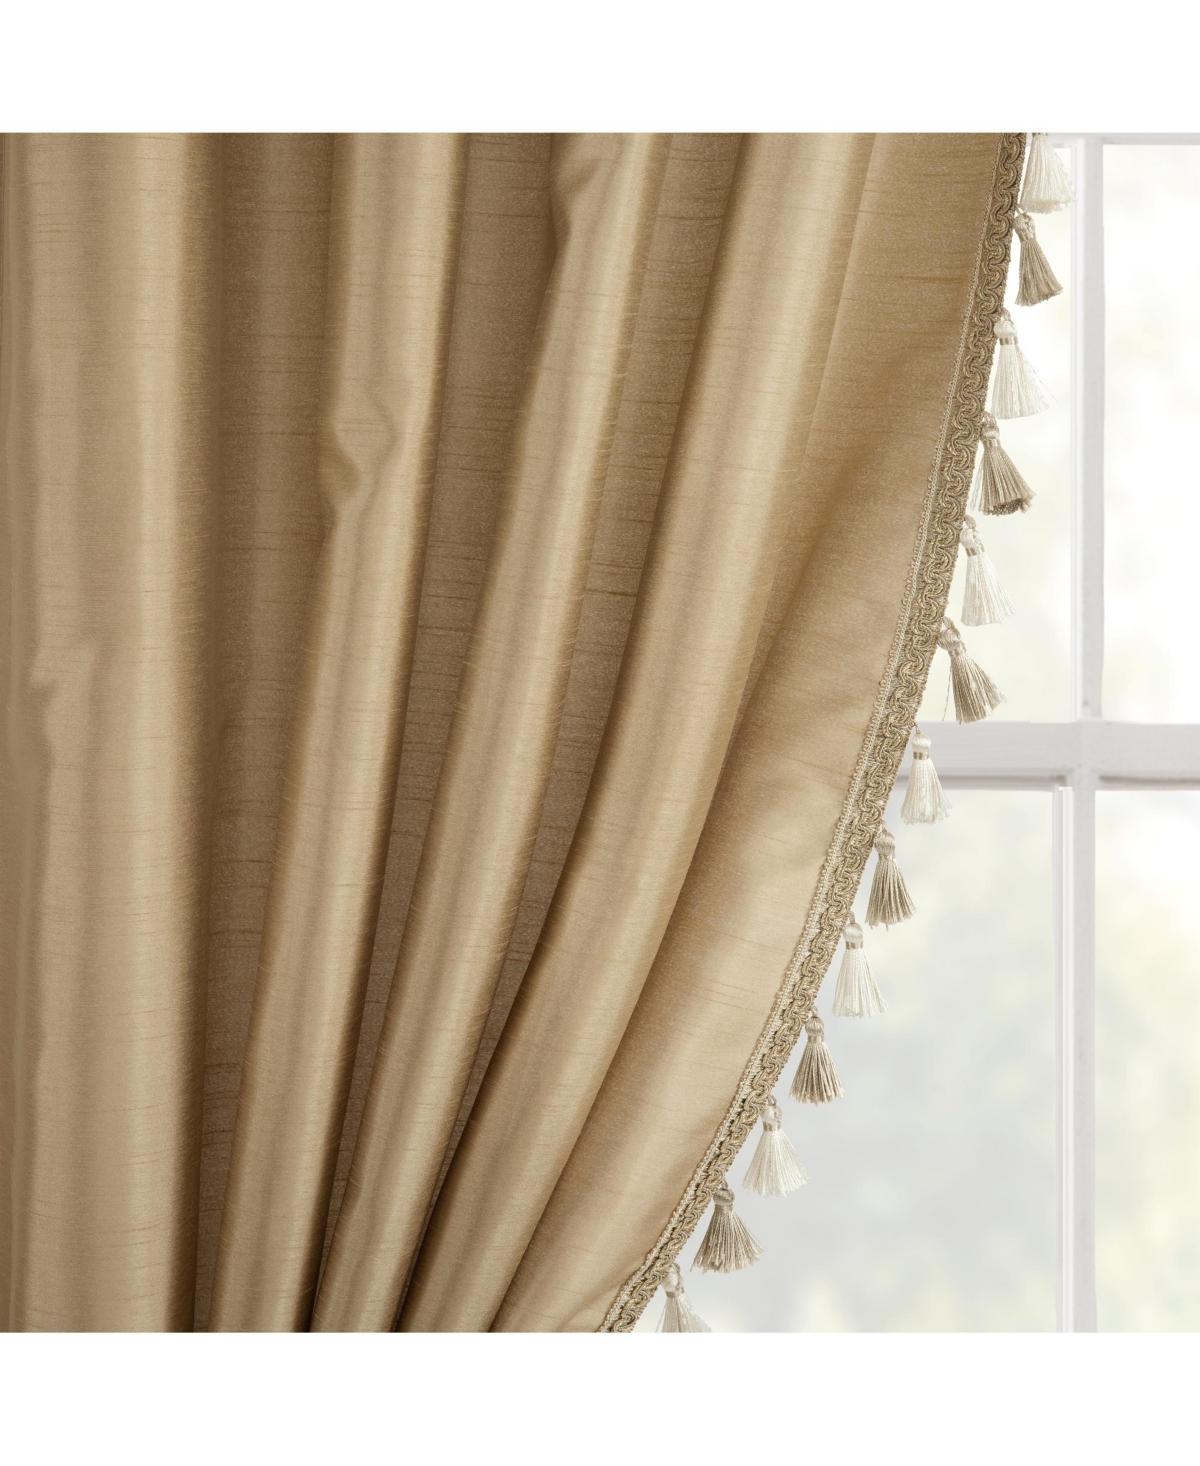 Lush Decor Luxury Regency Faux Silk Two Tone Tassel Window Curtain Panels In Taupe